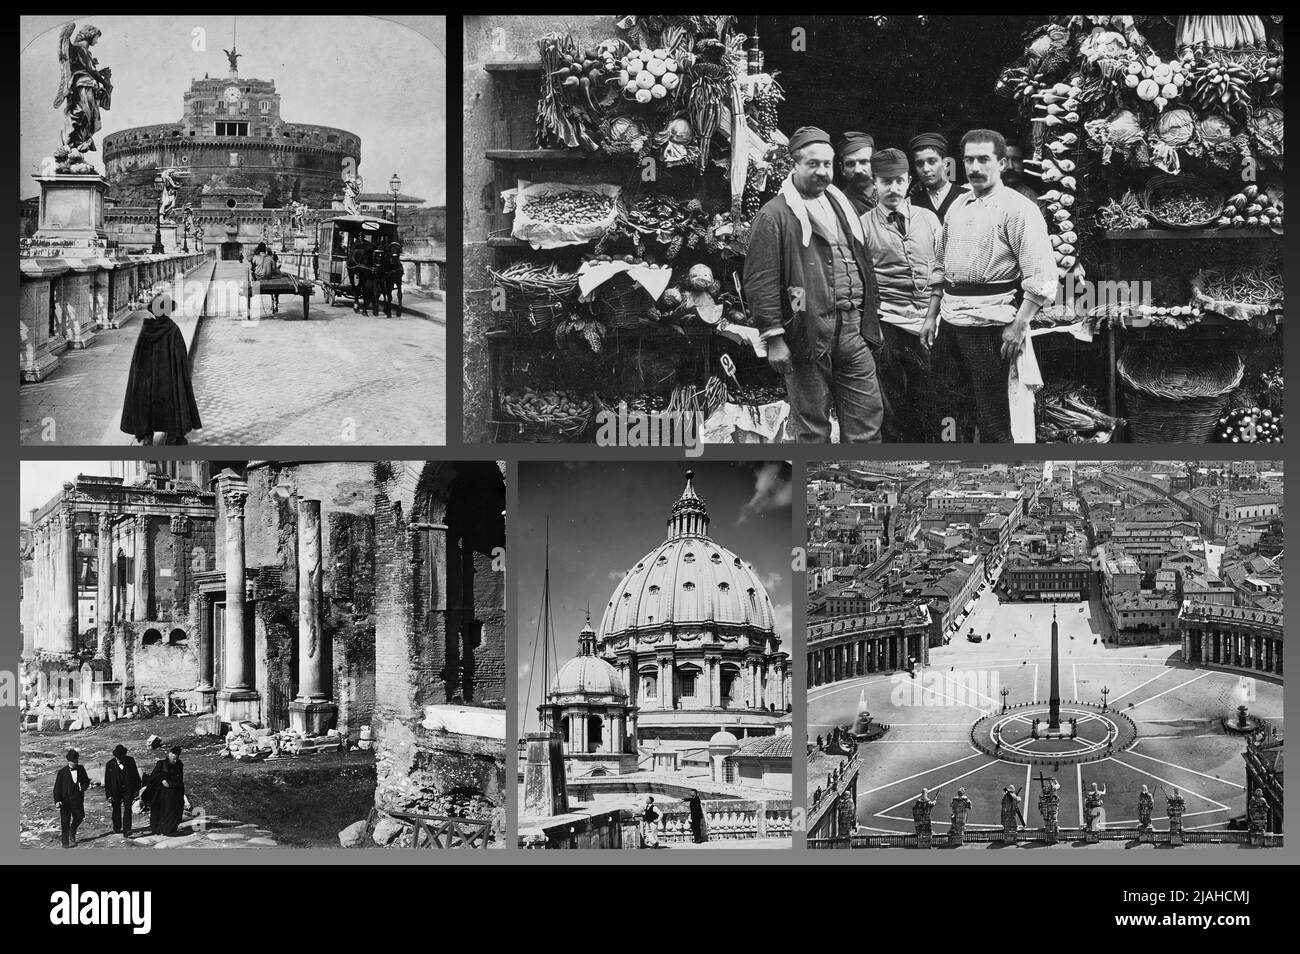 Roma, capitale italiana, con i suoi monumenti storici, come appariva all'inizio del Novecento Foto Stock